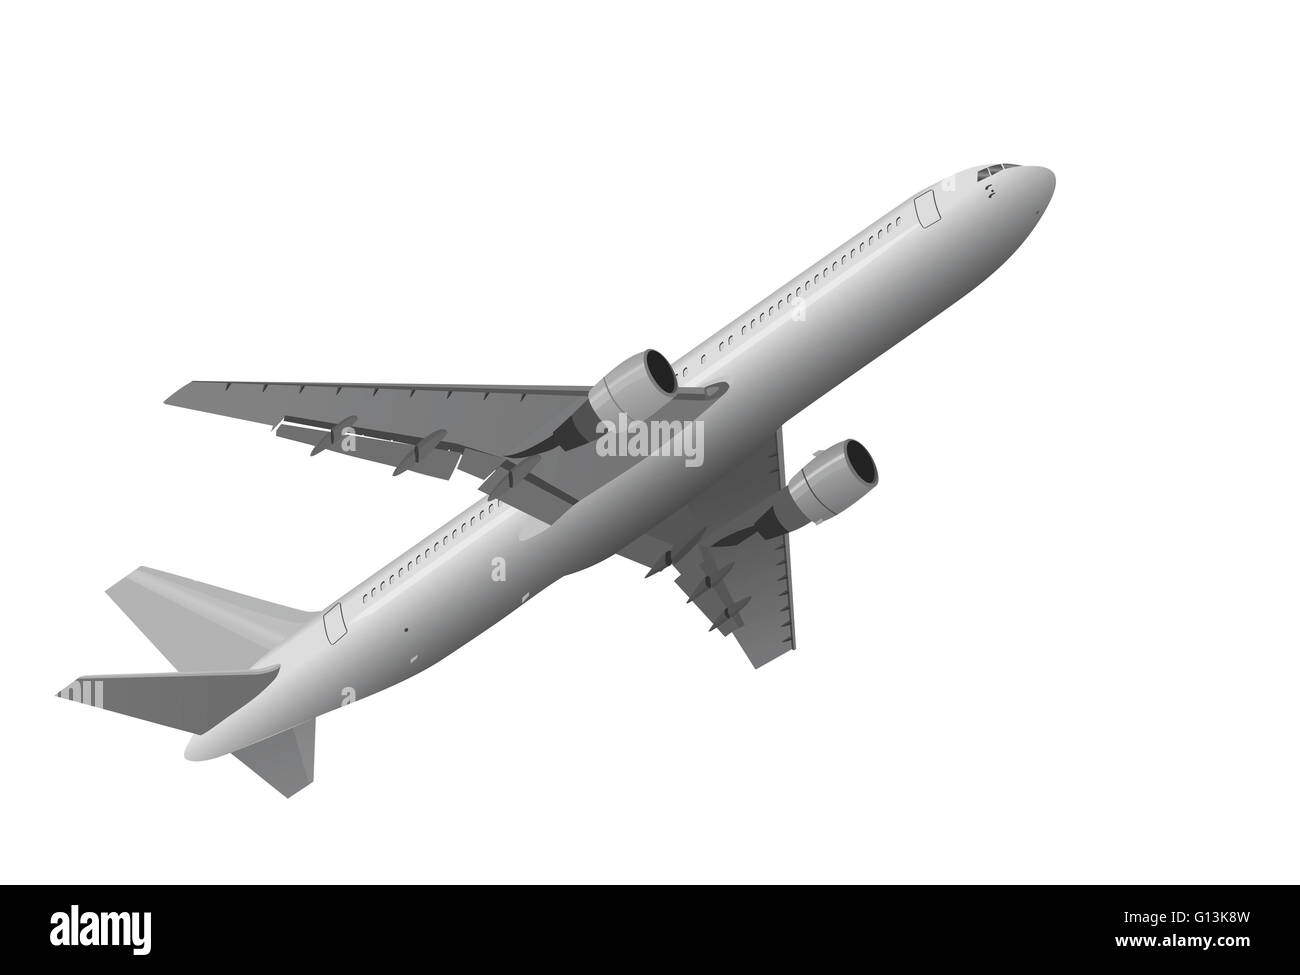 Bild von Jet-Flugzeug, das auf weißem Hintergrund abheben Stockfoto